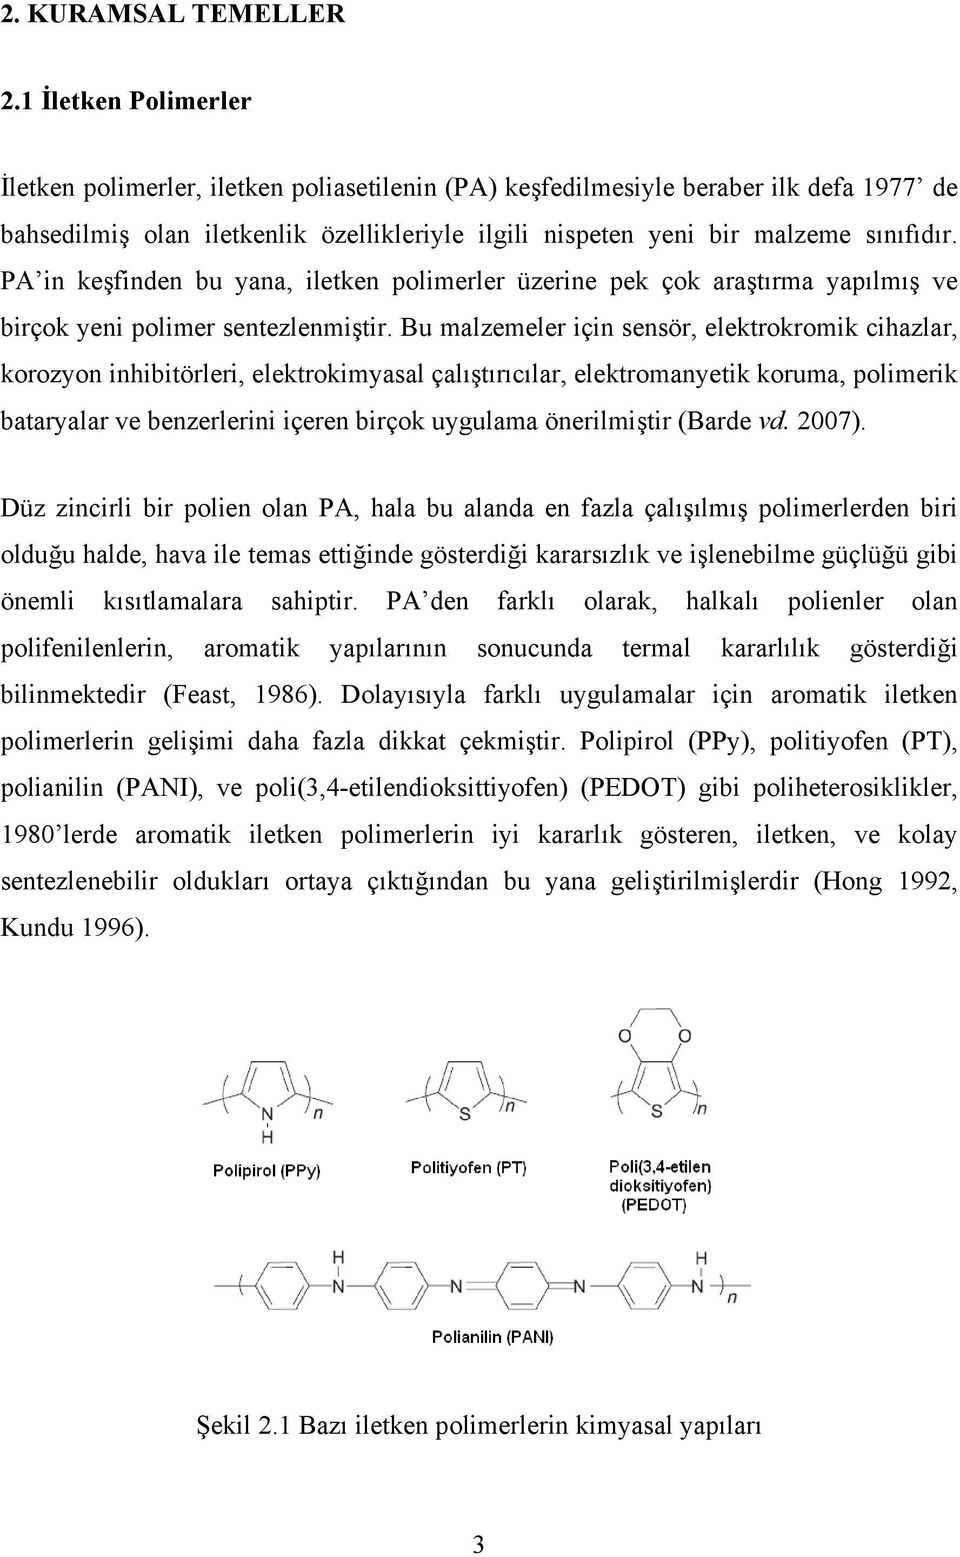 PA in keşfinden bu yana, iletken polimerler üzerine pek çok araştırma yapılmış ve birçok yeni polimer sentezlenmiştir.